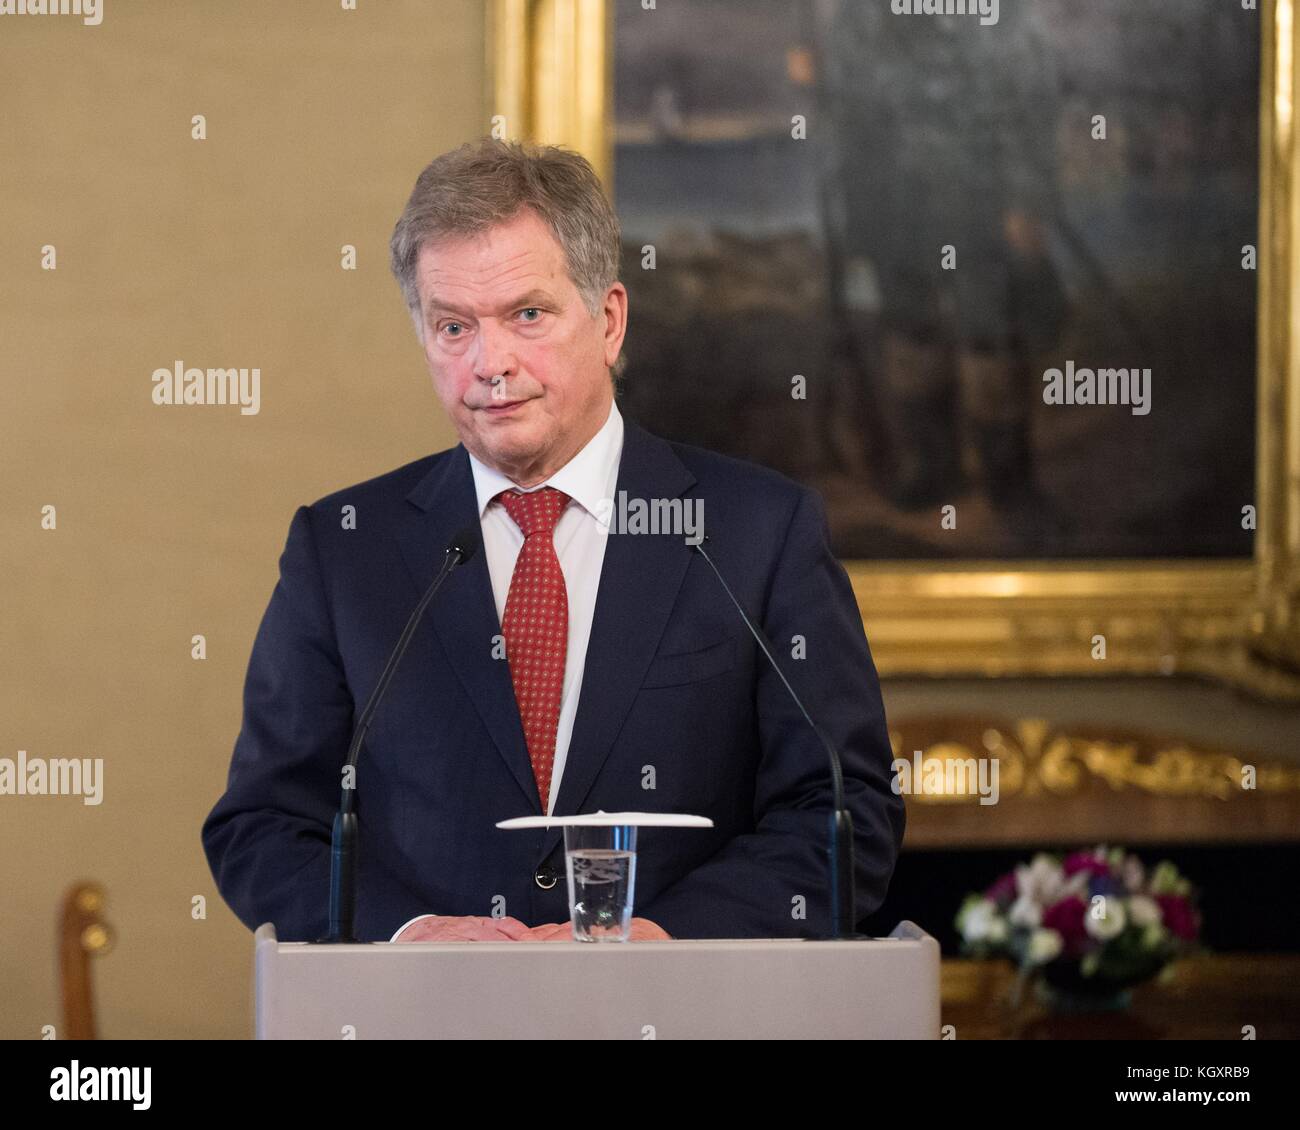 Il presidente finlandese sauli niinisto parla durante una conferenza stampa presso il palazzo presidenziale del 6 novembre 2017 a Helsinki in Finlandia. (Foto di jette carr via planetpix) Foto Stock